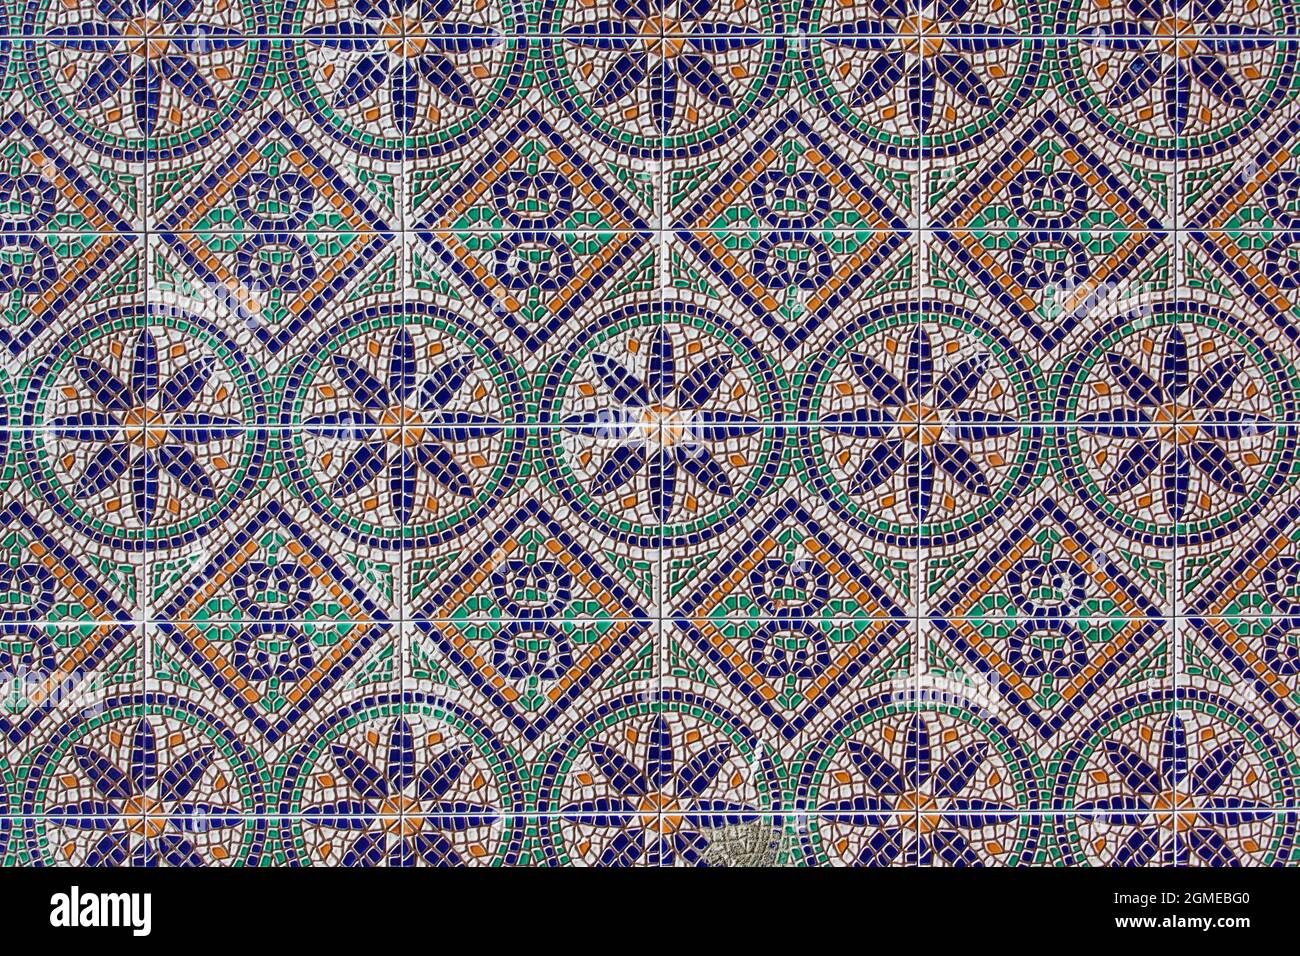 Mosaïque ancienne avec des motifs géométriques et floraux colorés Banque D'Images